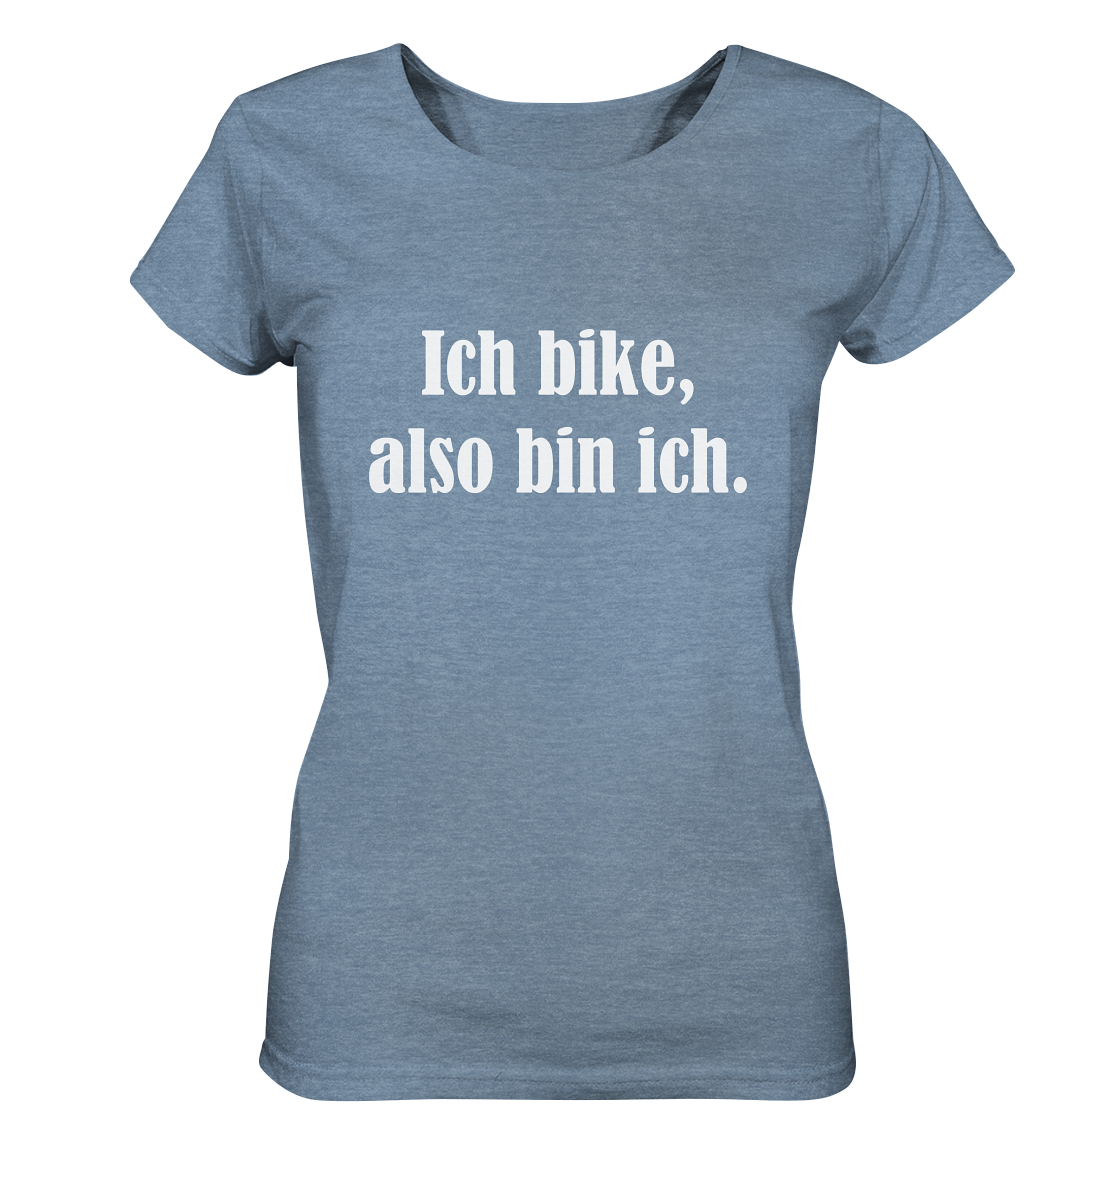 T-Shirt, Damen, Rundhals, mit weißem Aufdruck "Ich bike, also bin ich", hell blau meliert